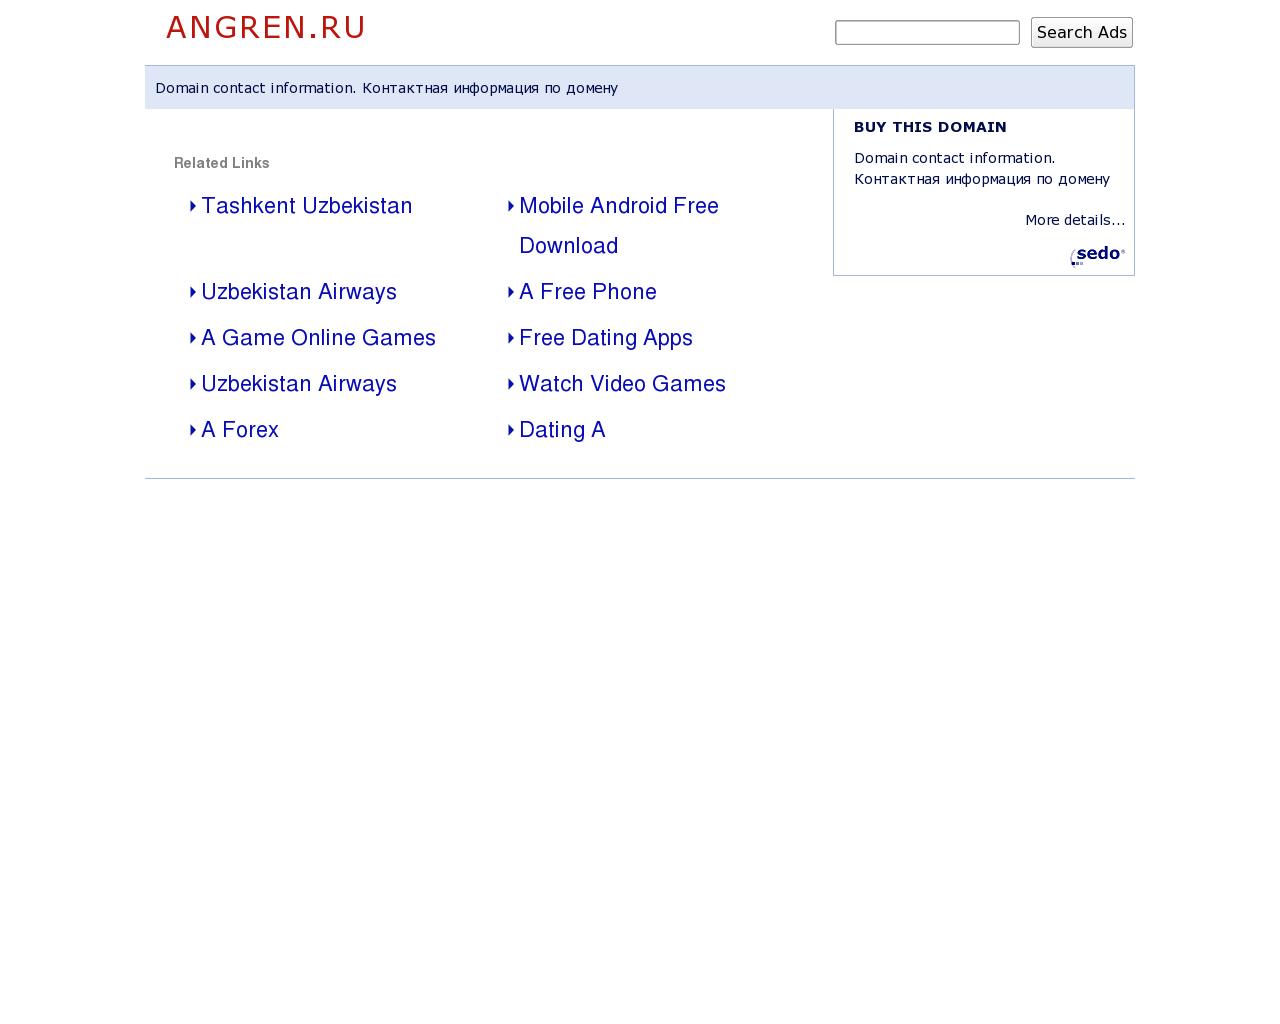 Изображение сайта angren.ru в разрешении 1280x1024